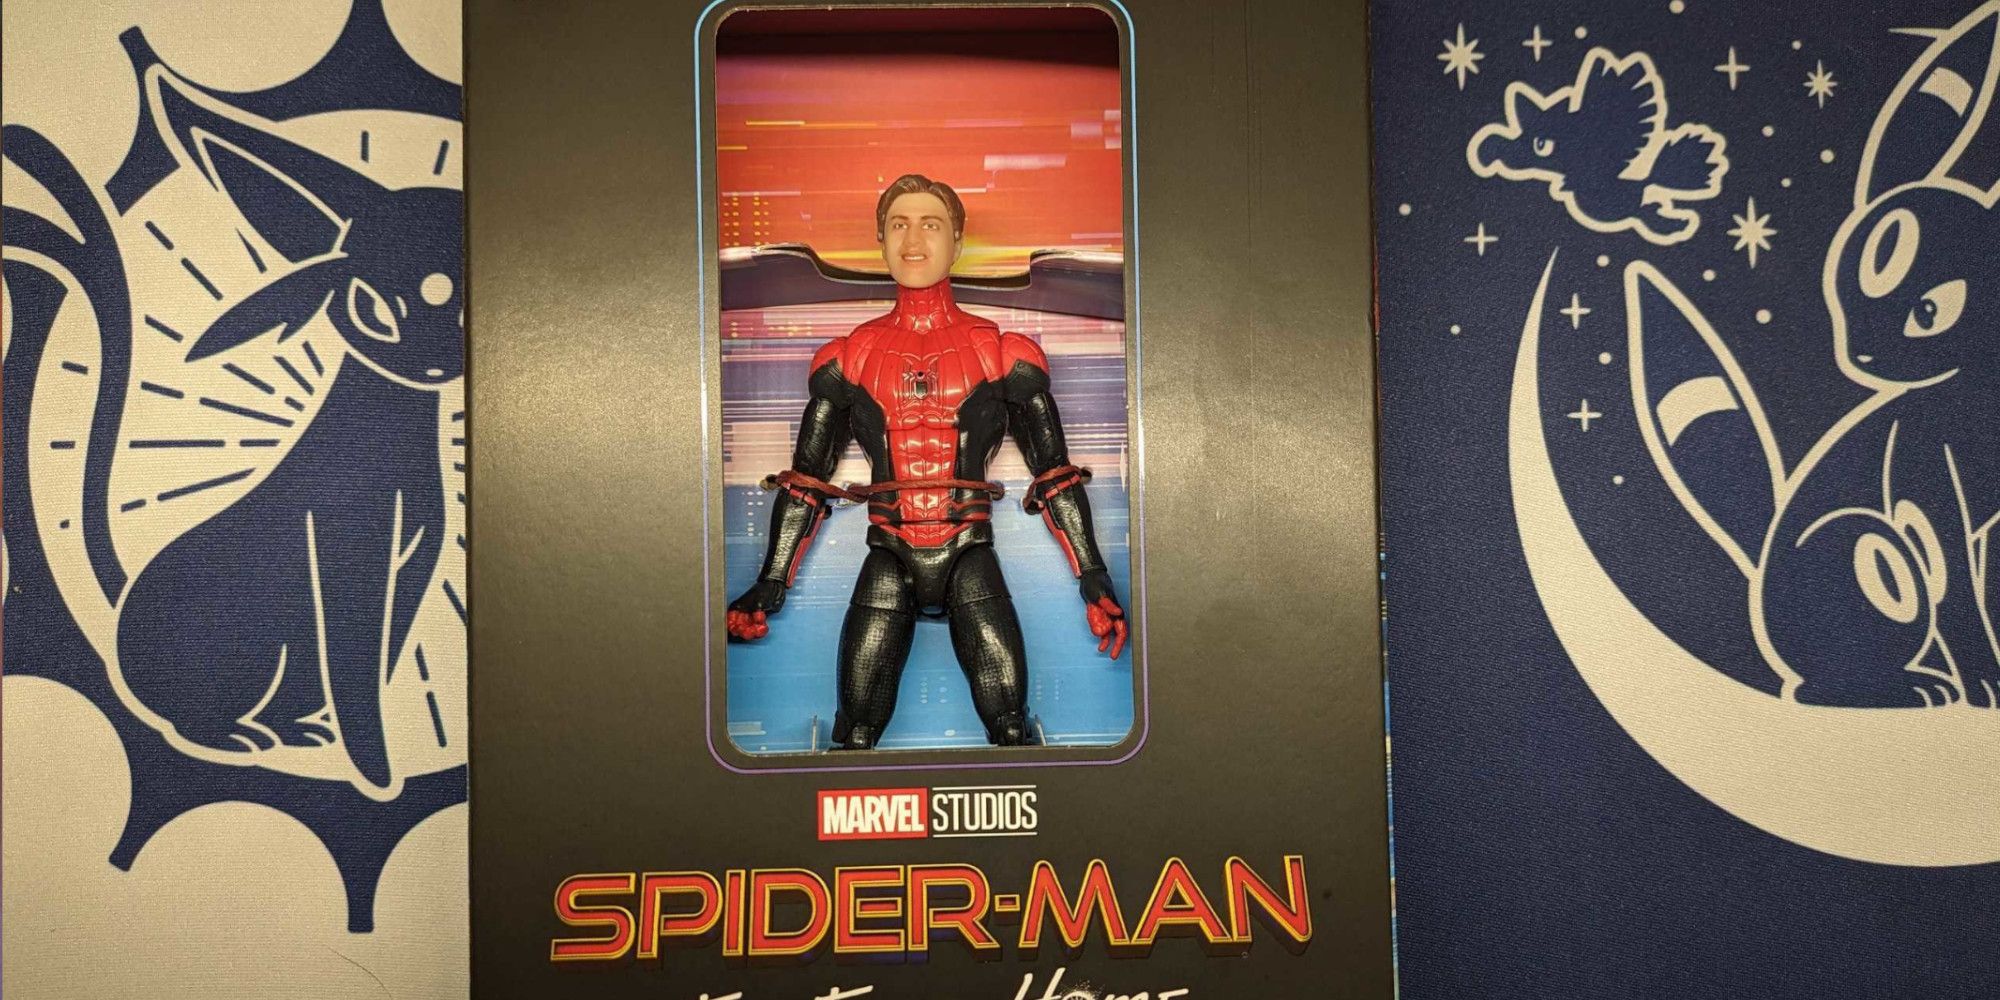 spider-man selfie series